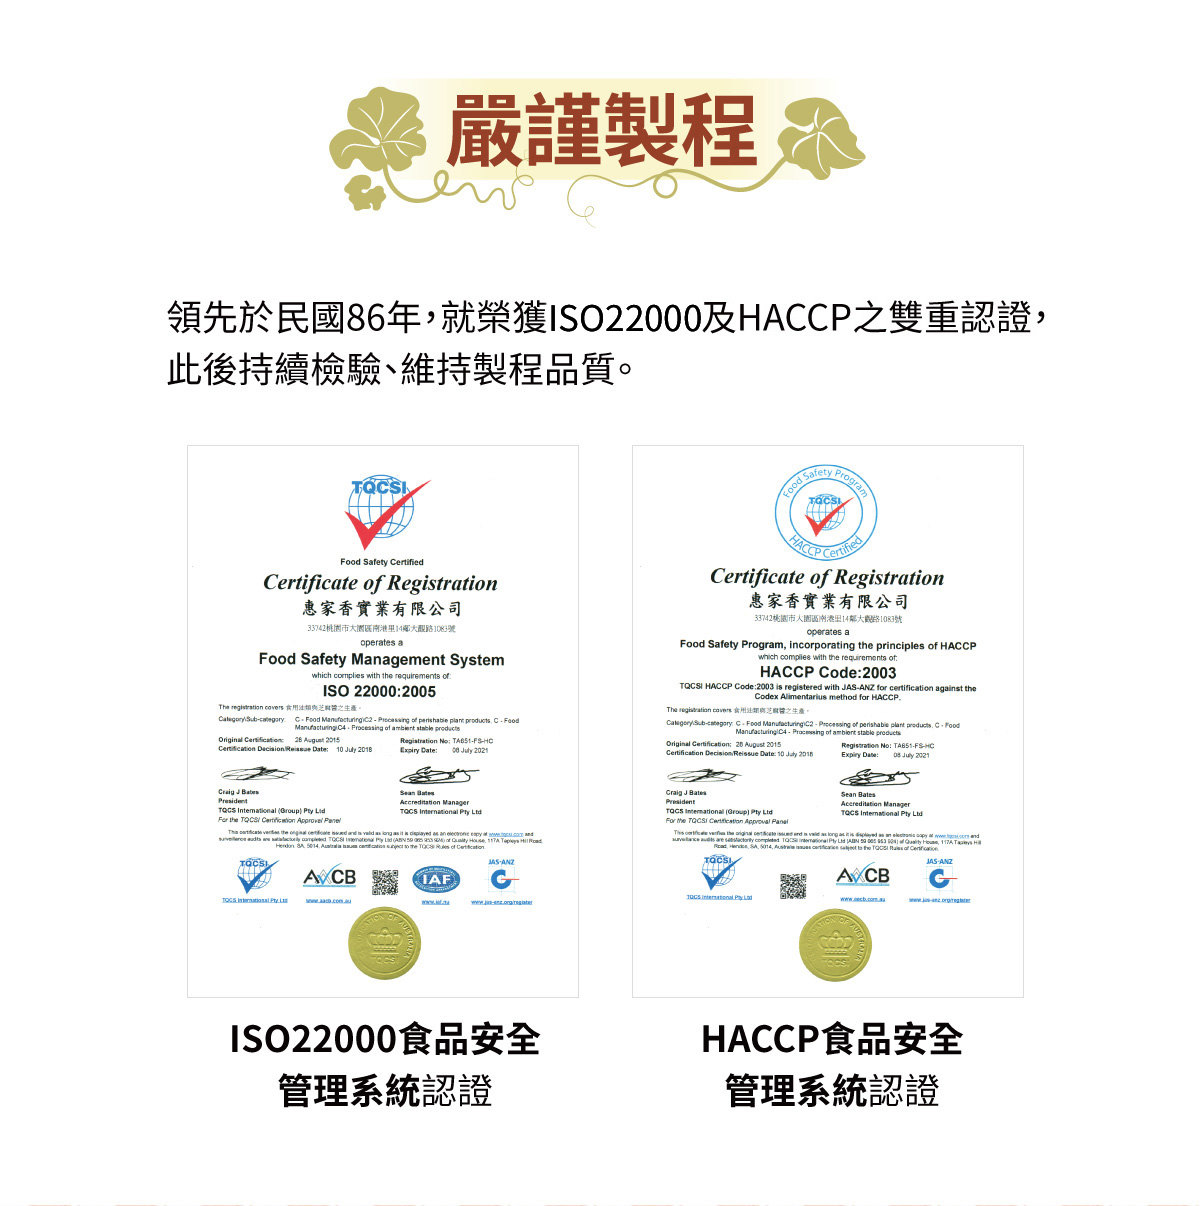 嚴謹製程通過ISO9001、HACCP雙認證